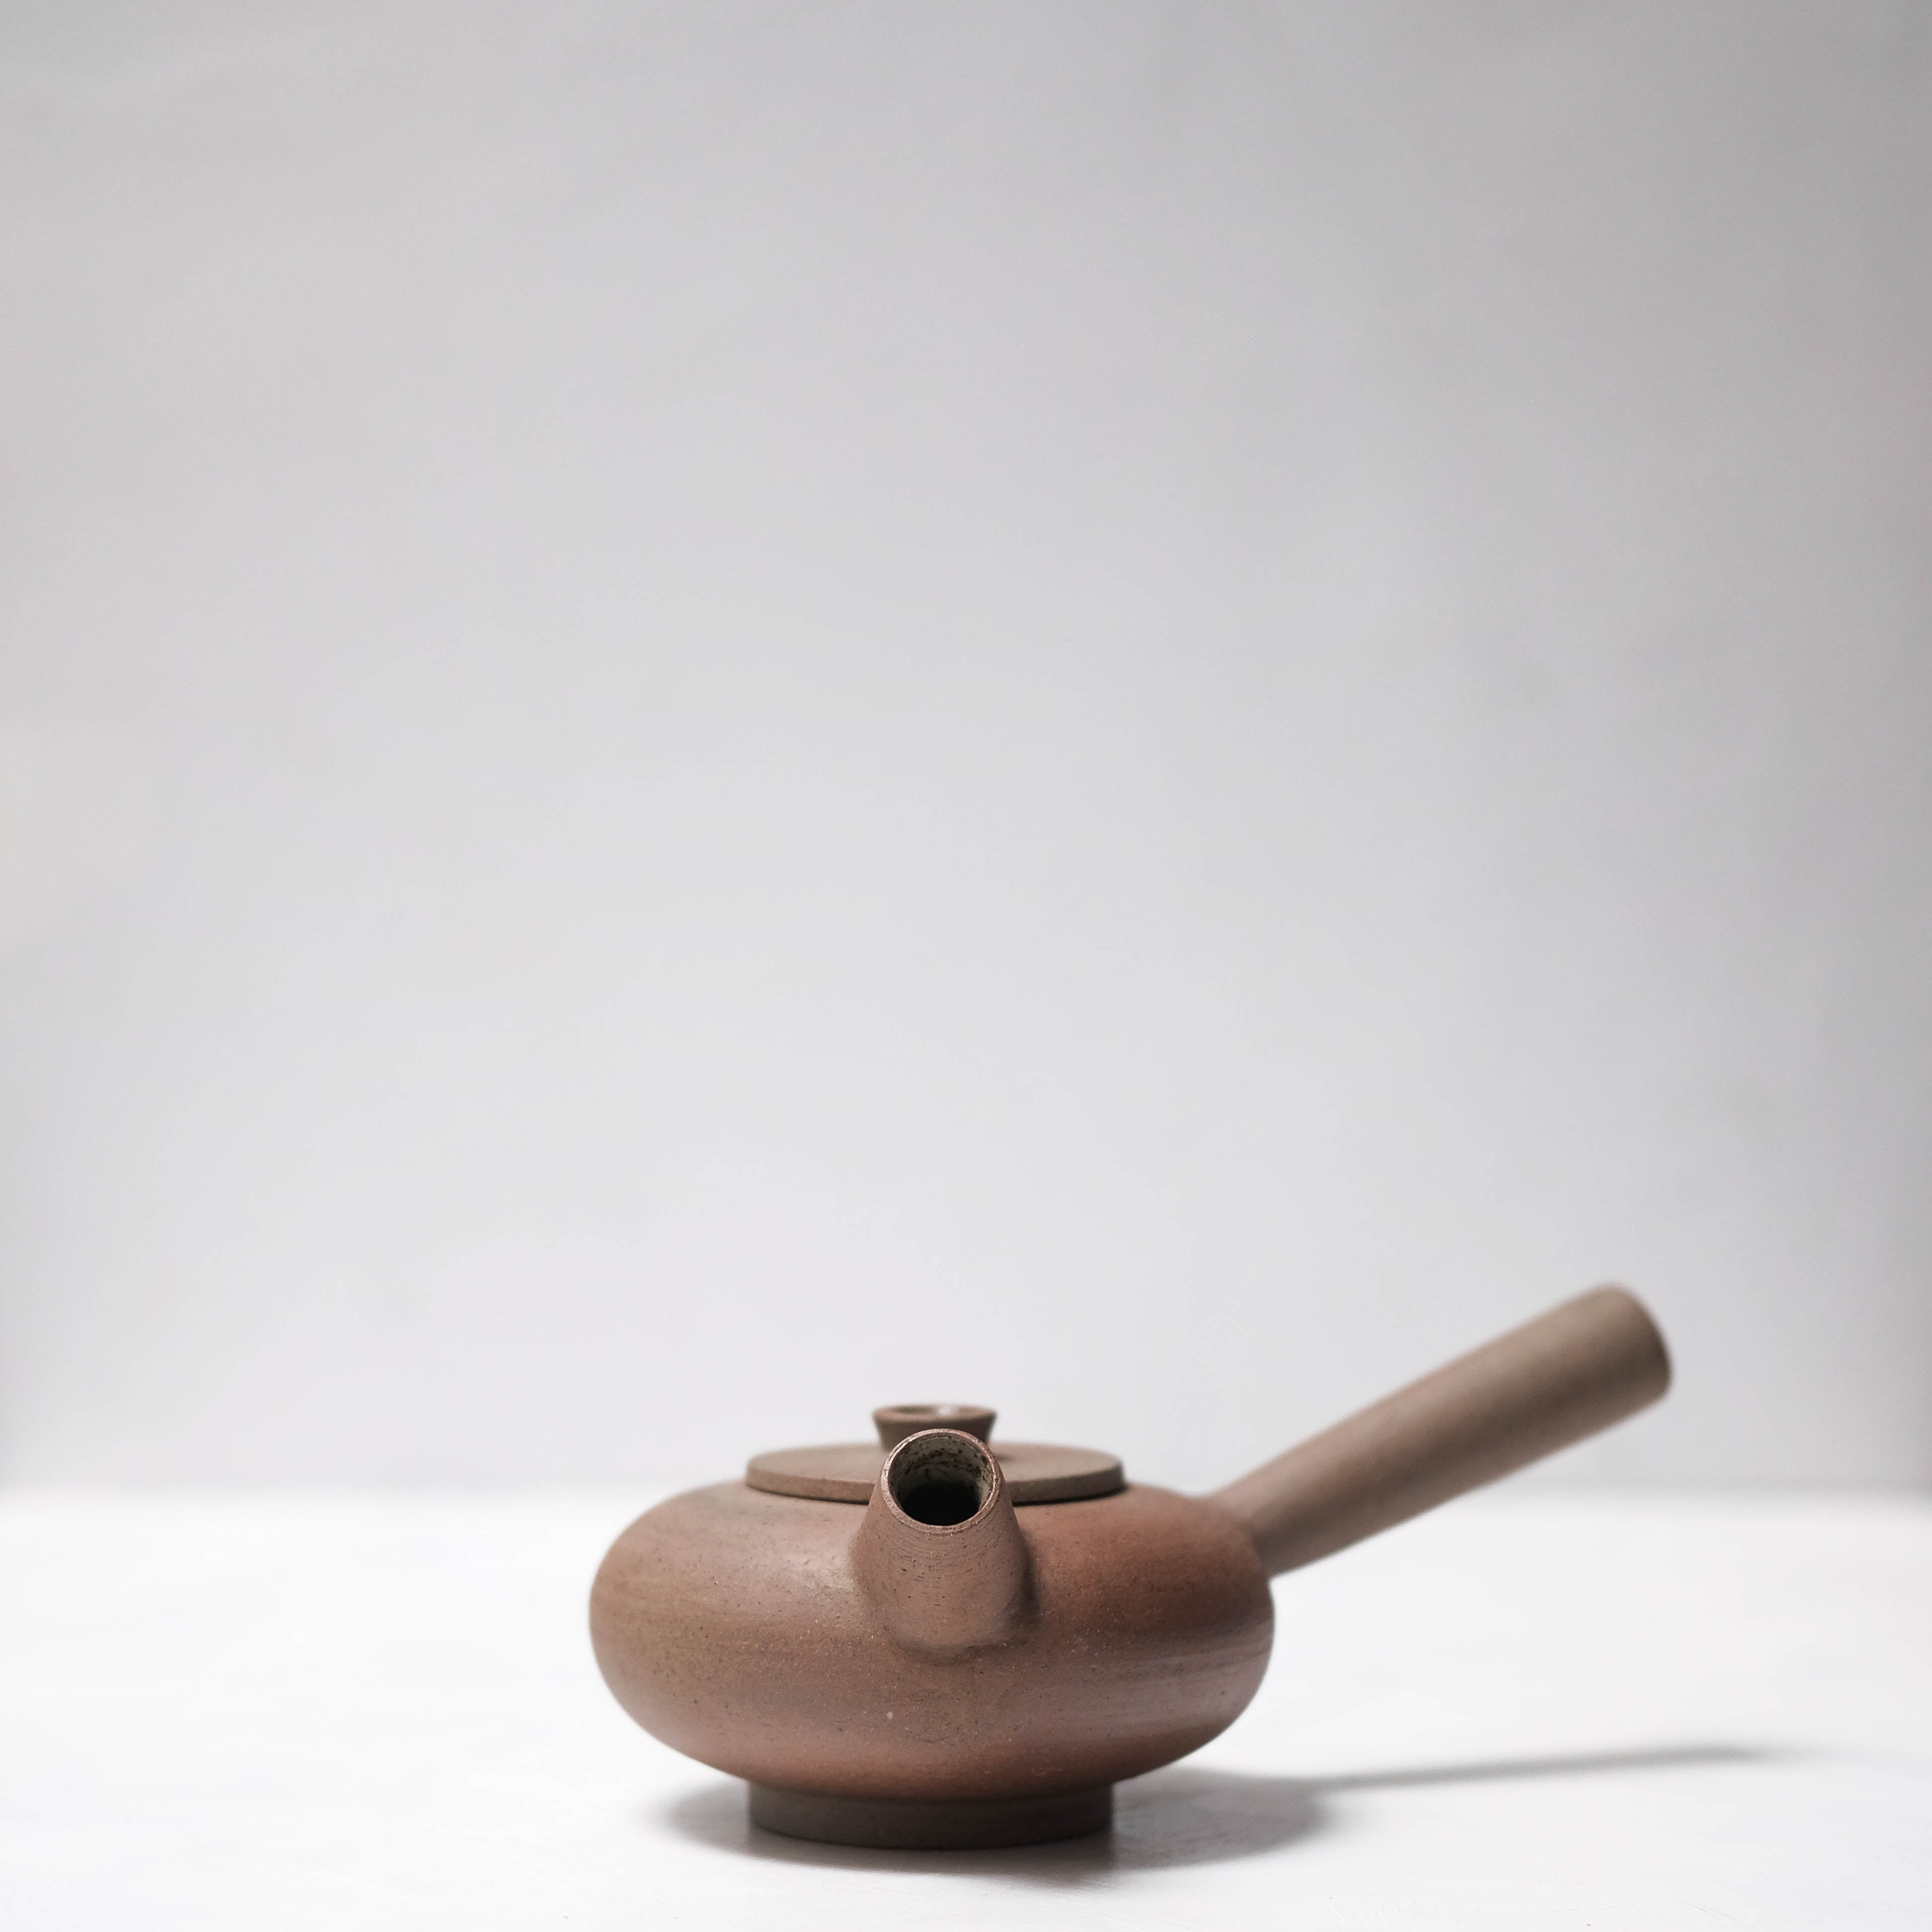 Haigusuri (灰釉) Teapot #ASH52